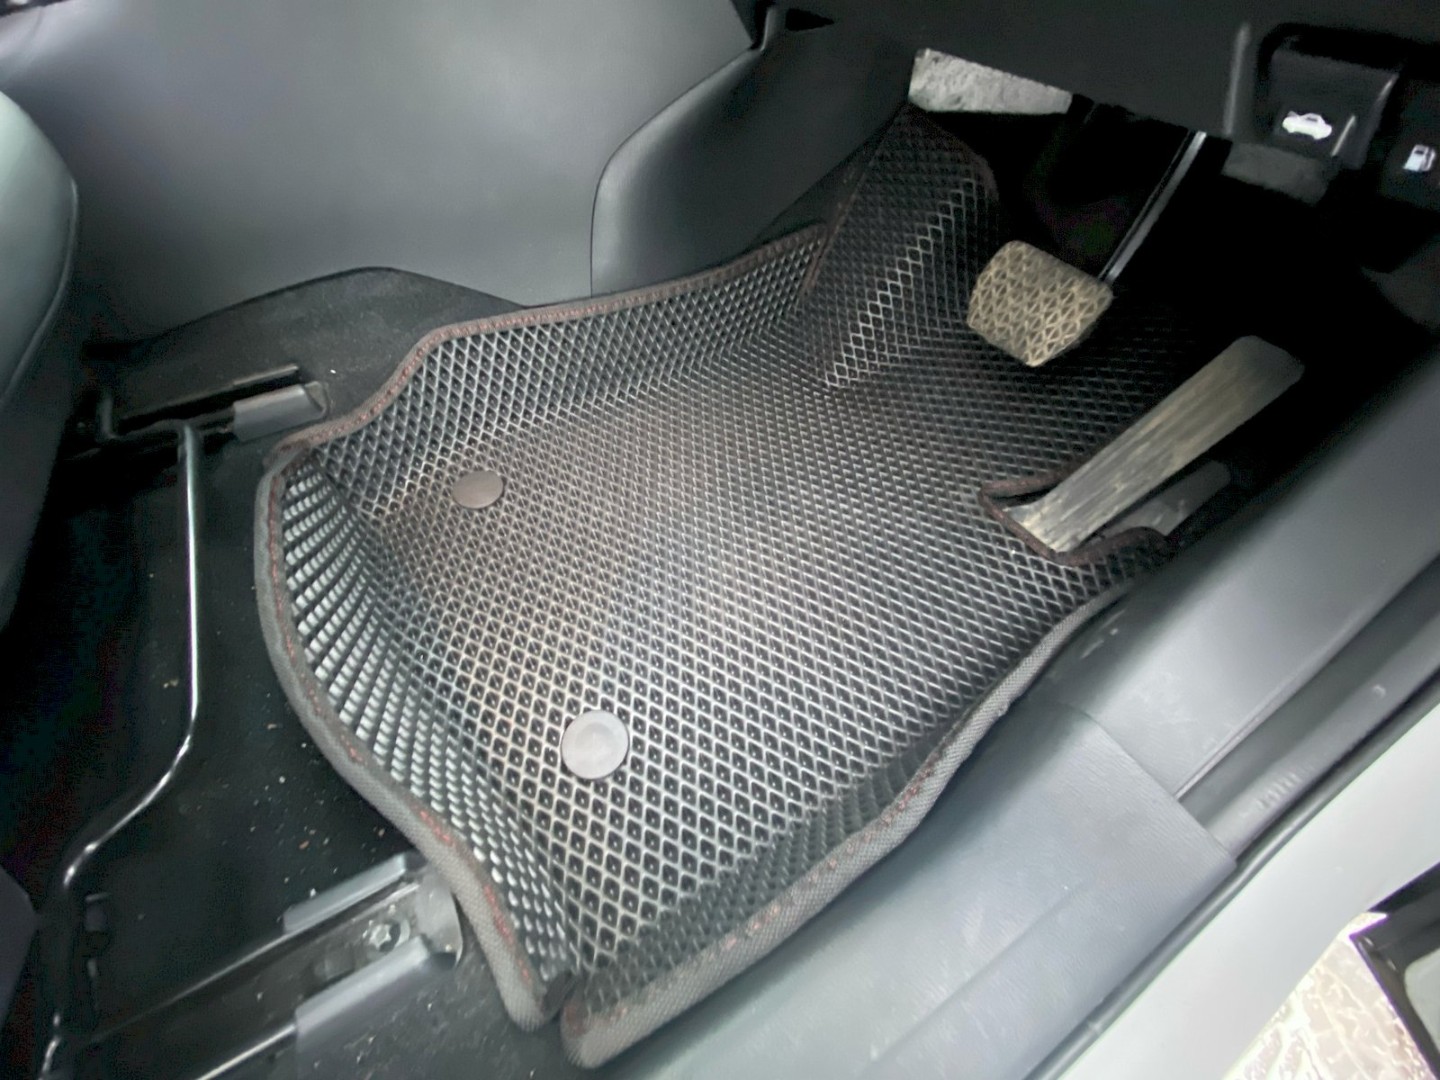 Ева коврики для Mazda CX-3 (DK) 2014 -2018 правый руль — ke9m0xQoQEahlavxoEB-PrG7wuTFu0-F-_j25hFq89wrcg1tyGIj54j5d0aOHb5bjI7l4npYt7TUkc-3ncEbuslO resized